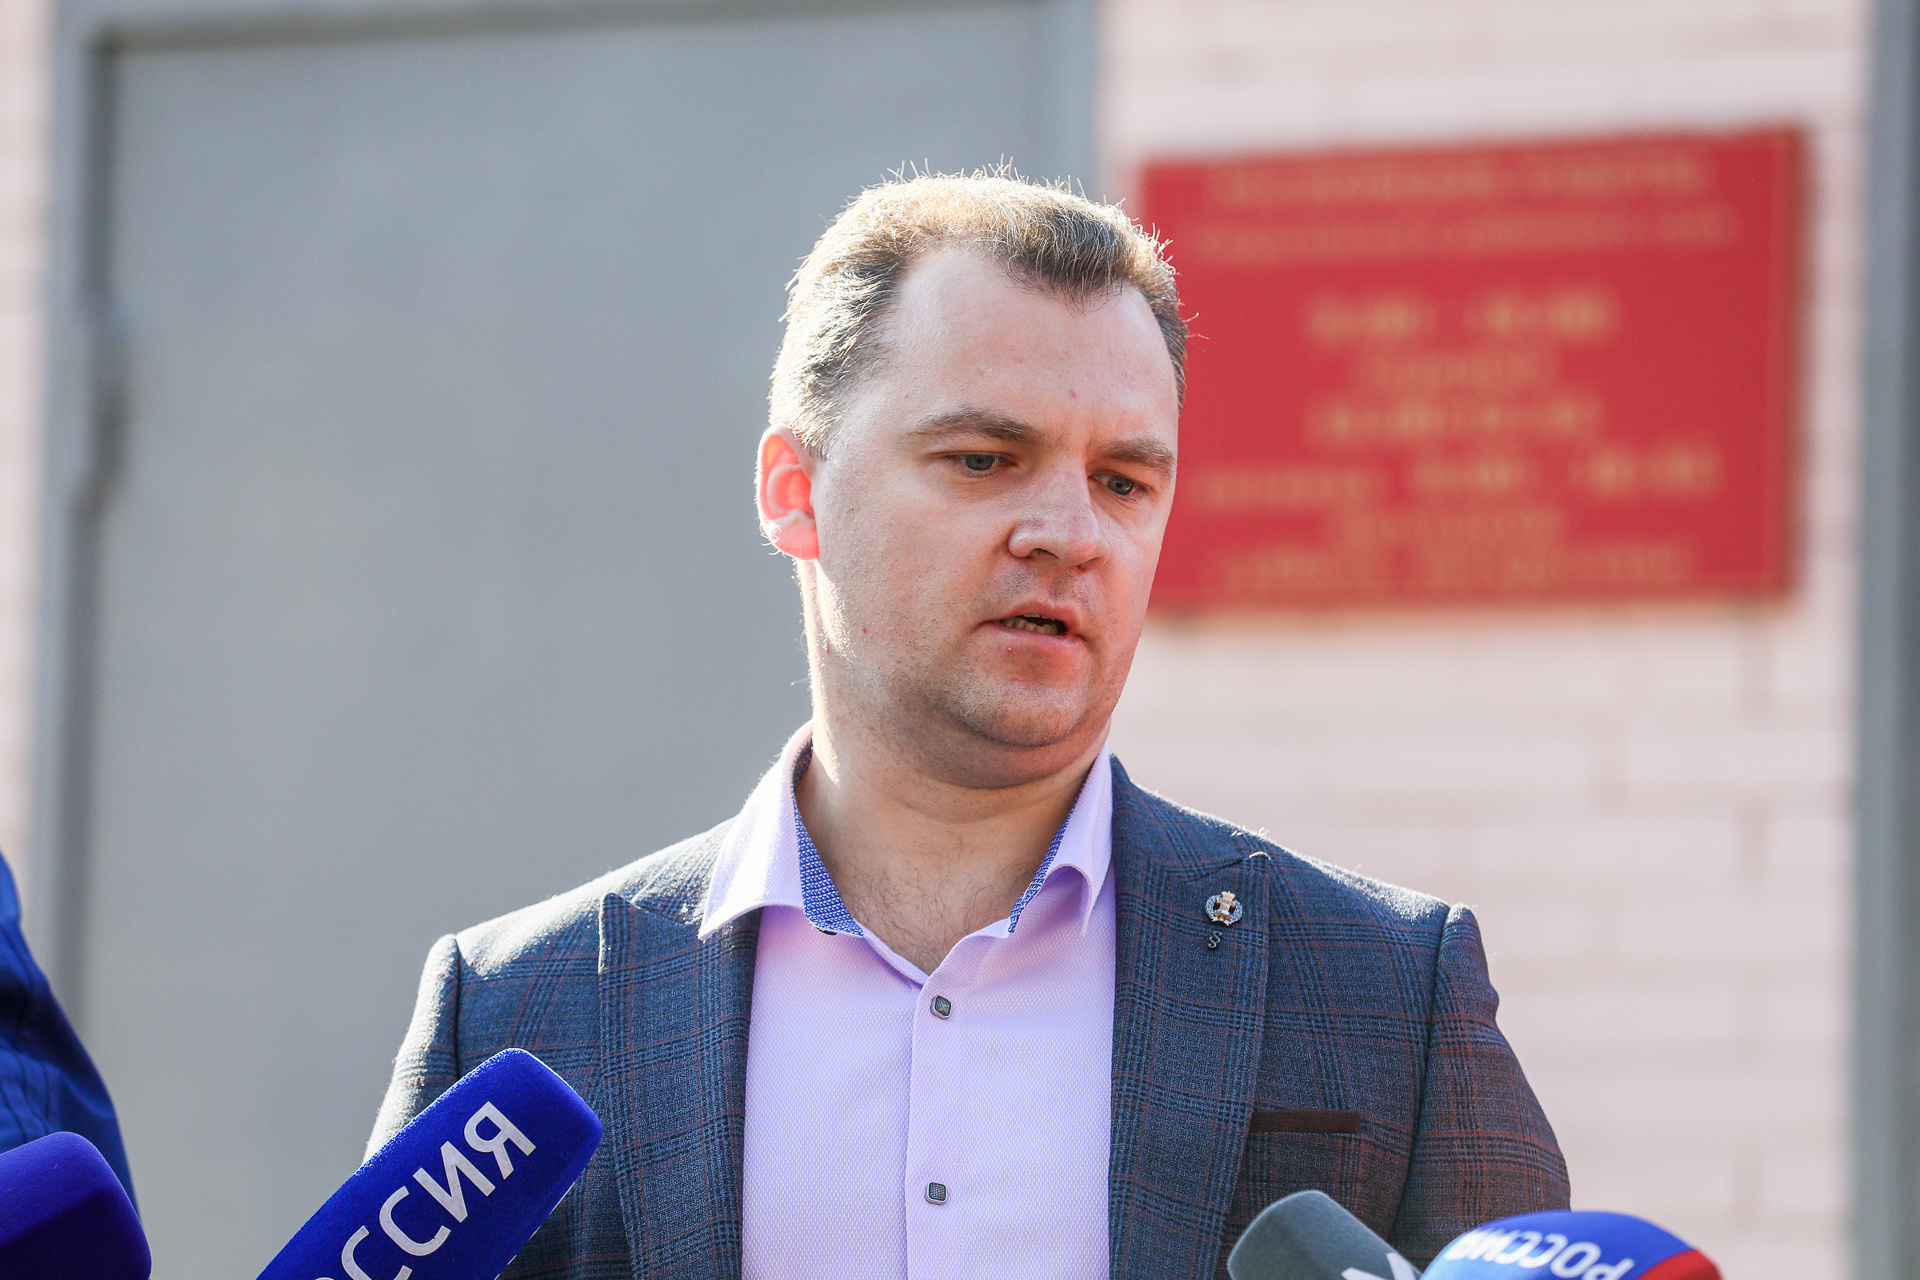 Адвокат Быкова Алексей Прохоров заявил о намерении обжаловать решение суда